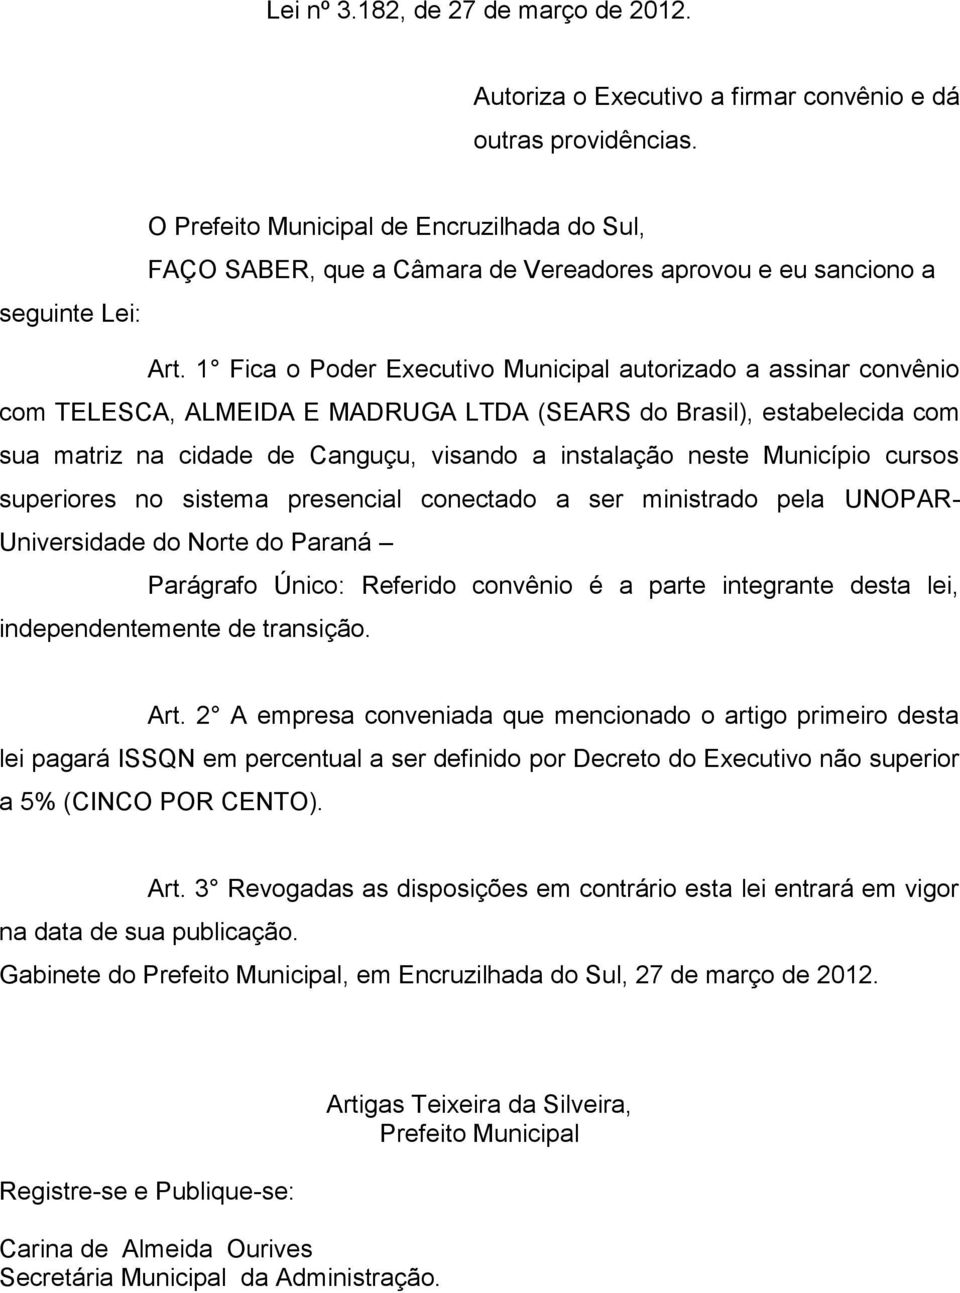 1 Fica o Poder Executivo Municipal autorizado a assinar convênio com TELESCA, ALMEIDA E MADRUGA LTDA (SEARS do Brasil), estabelecida com sua matriz na cidade de Canguçu, visando a instalação neste